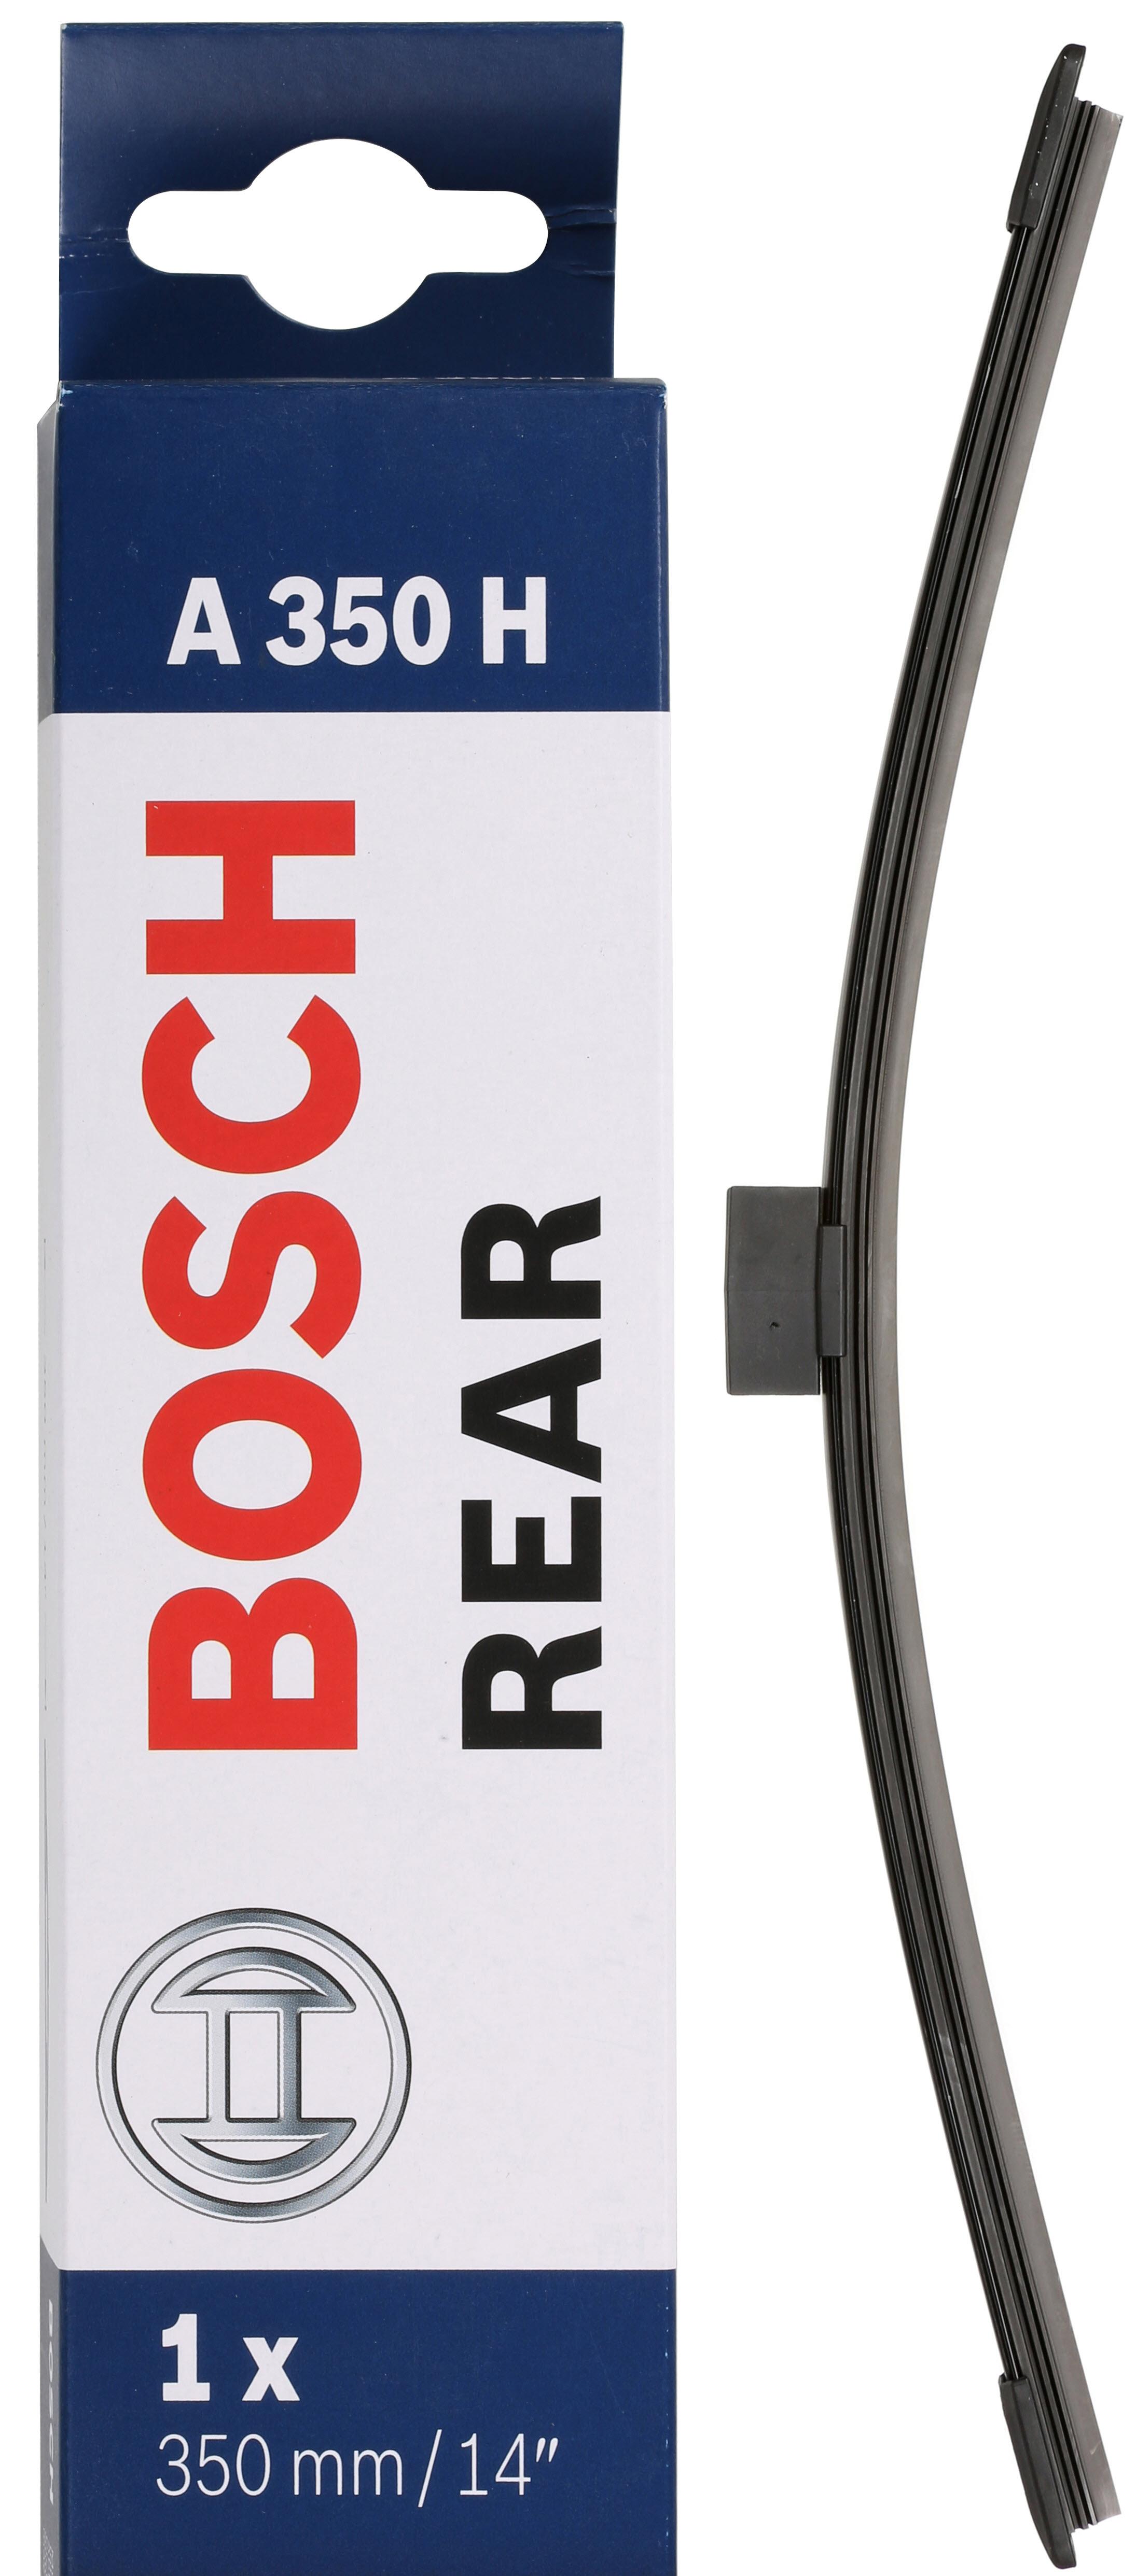 Bosch A350H Wiper Blade - Single